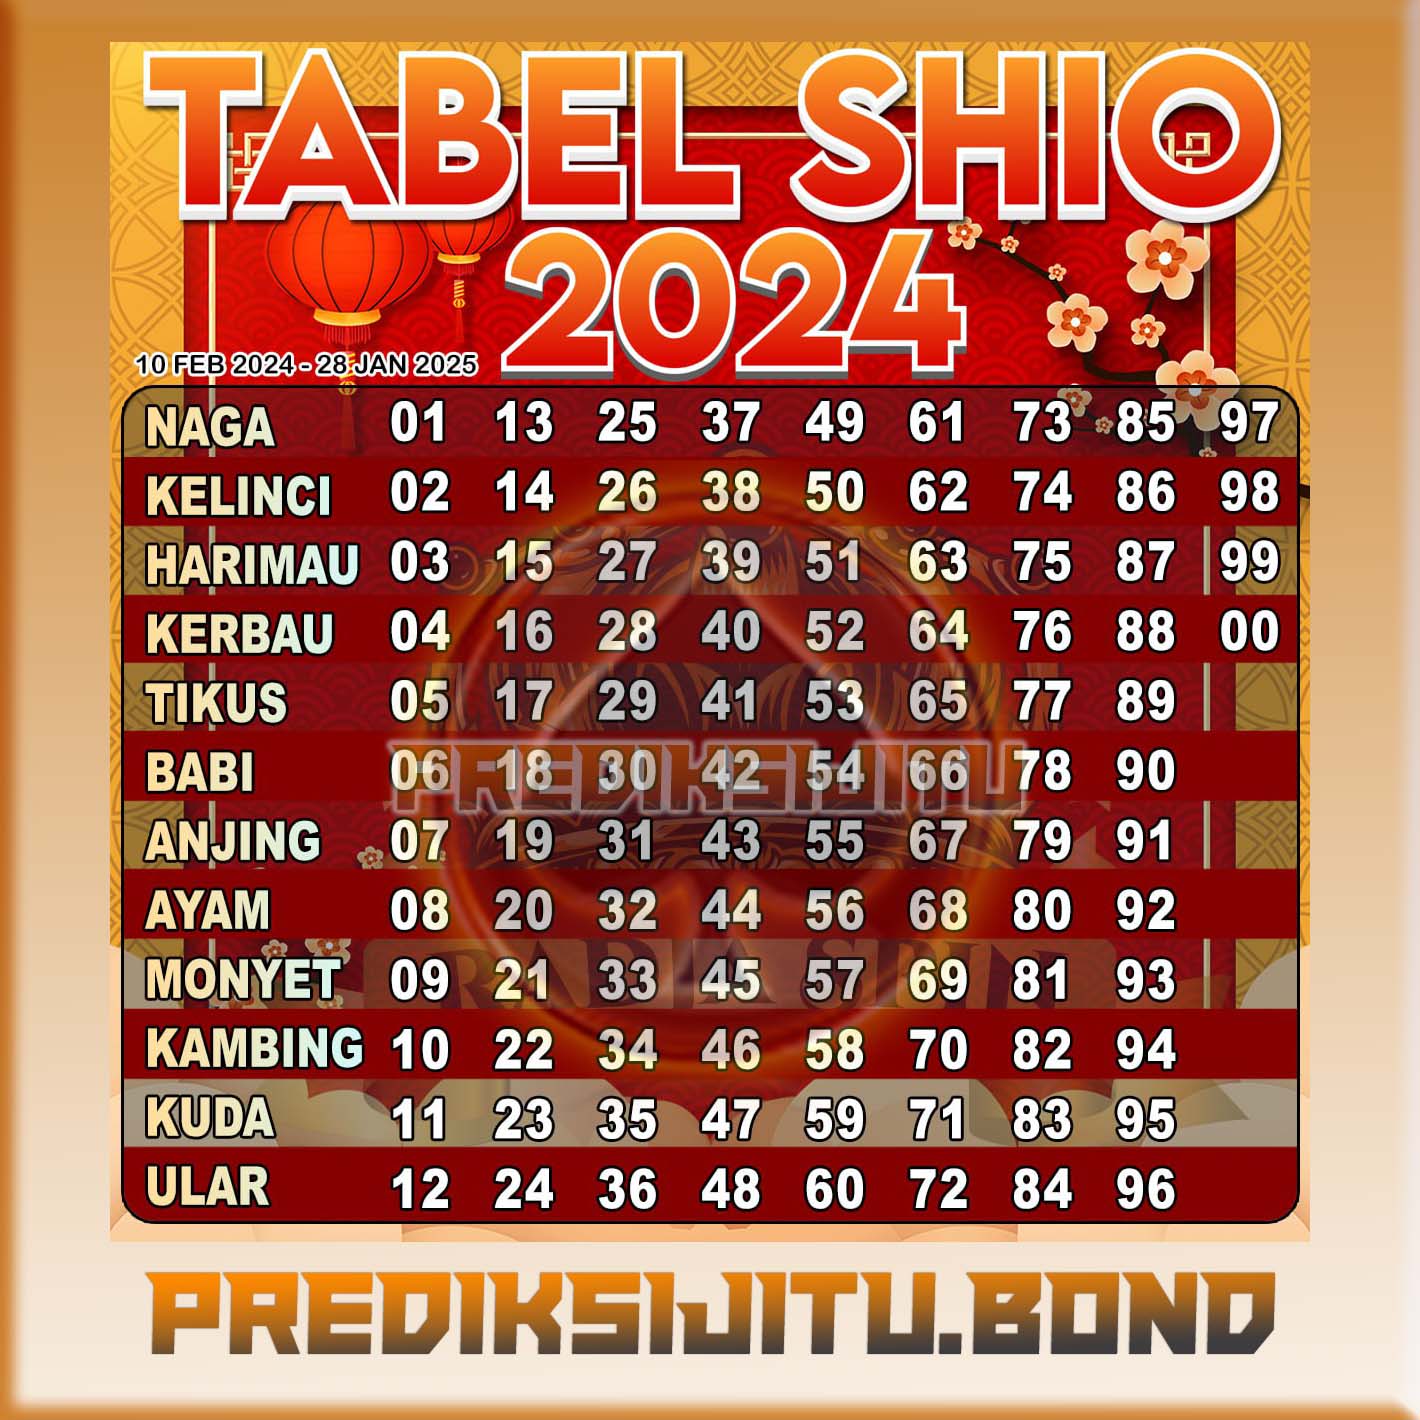 Tabel Shio Togel 2024 Lengkap dengan Arti Mimpi